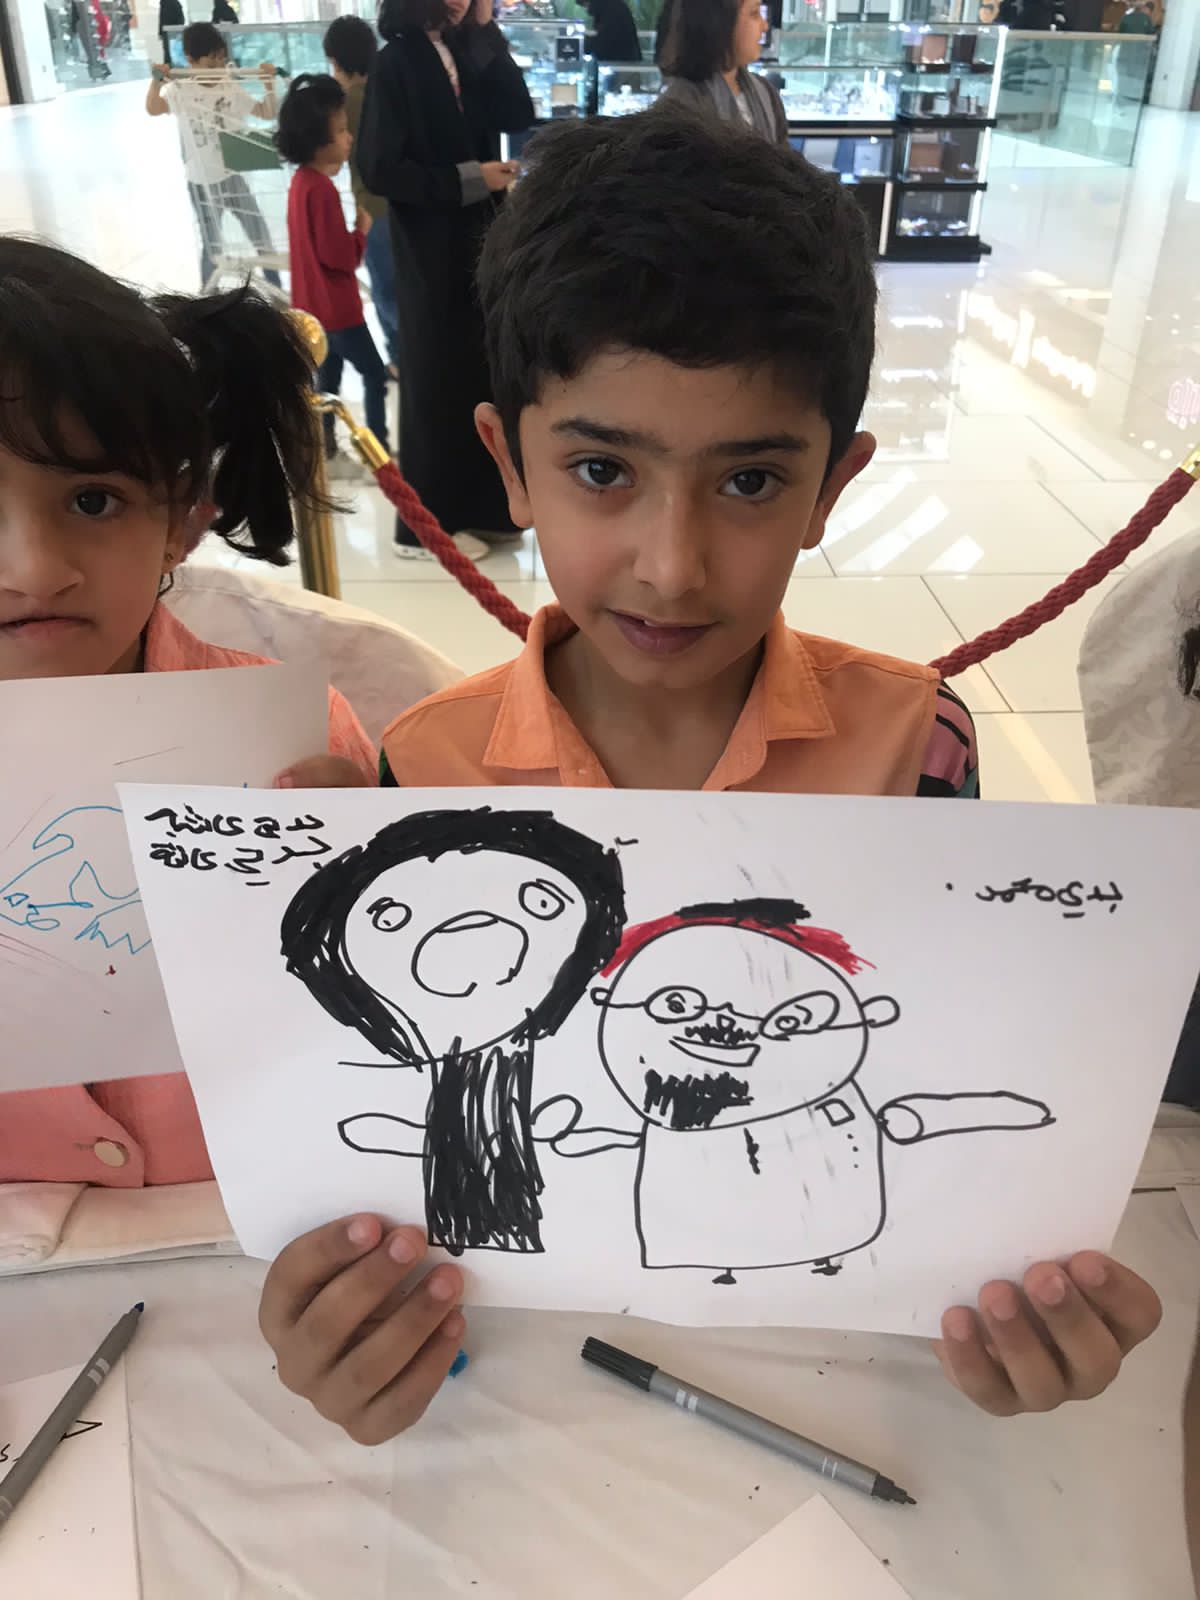 ركن “جسفت” عسير يشهد إقبالًا من الأطفال تزامناً مع اليوم العالمي بشأن إساءة معاملة المسنين